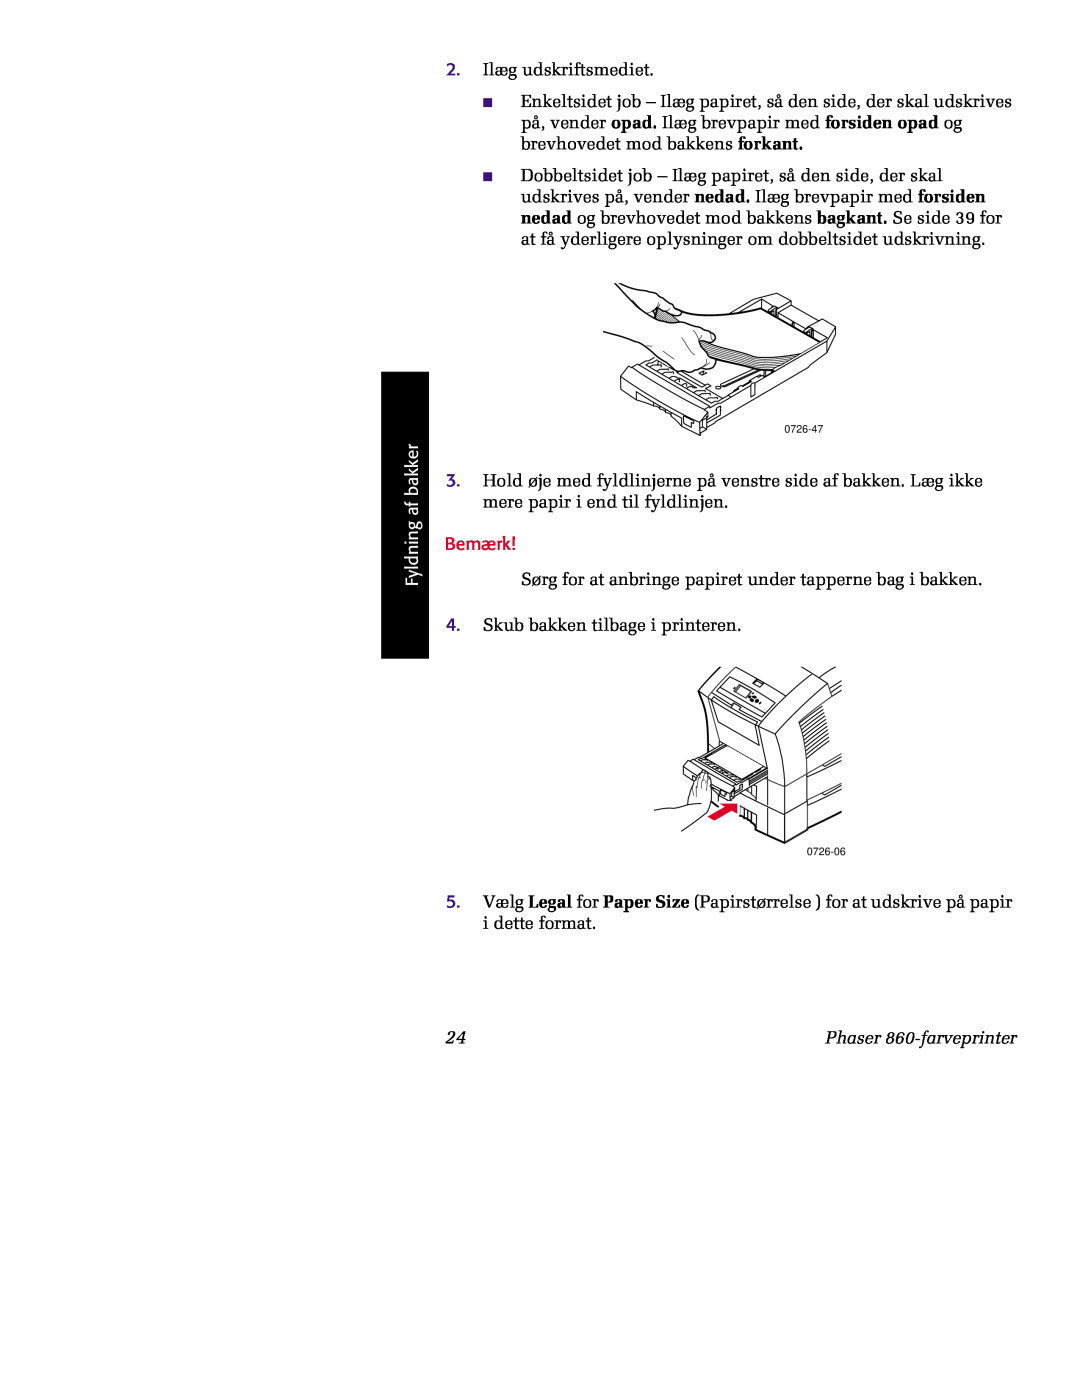 Tektronix manual 2. Ilæg udskriftsmediet, Fyldning af bakker, Bemærk, Phaser 860-farveprinter 